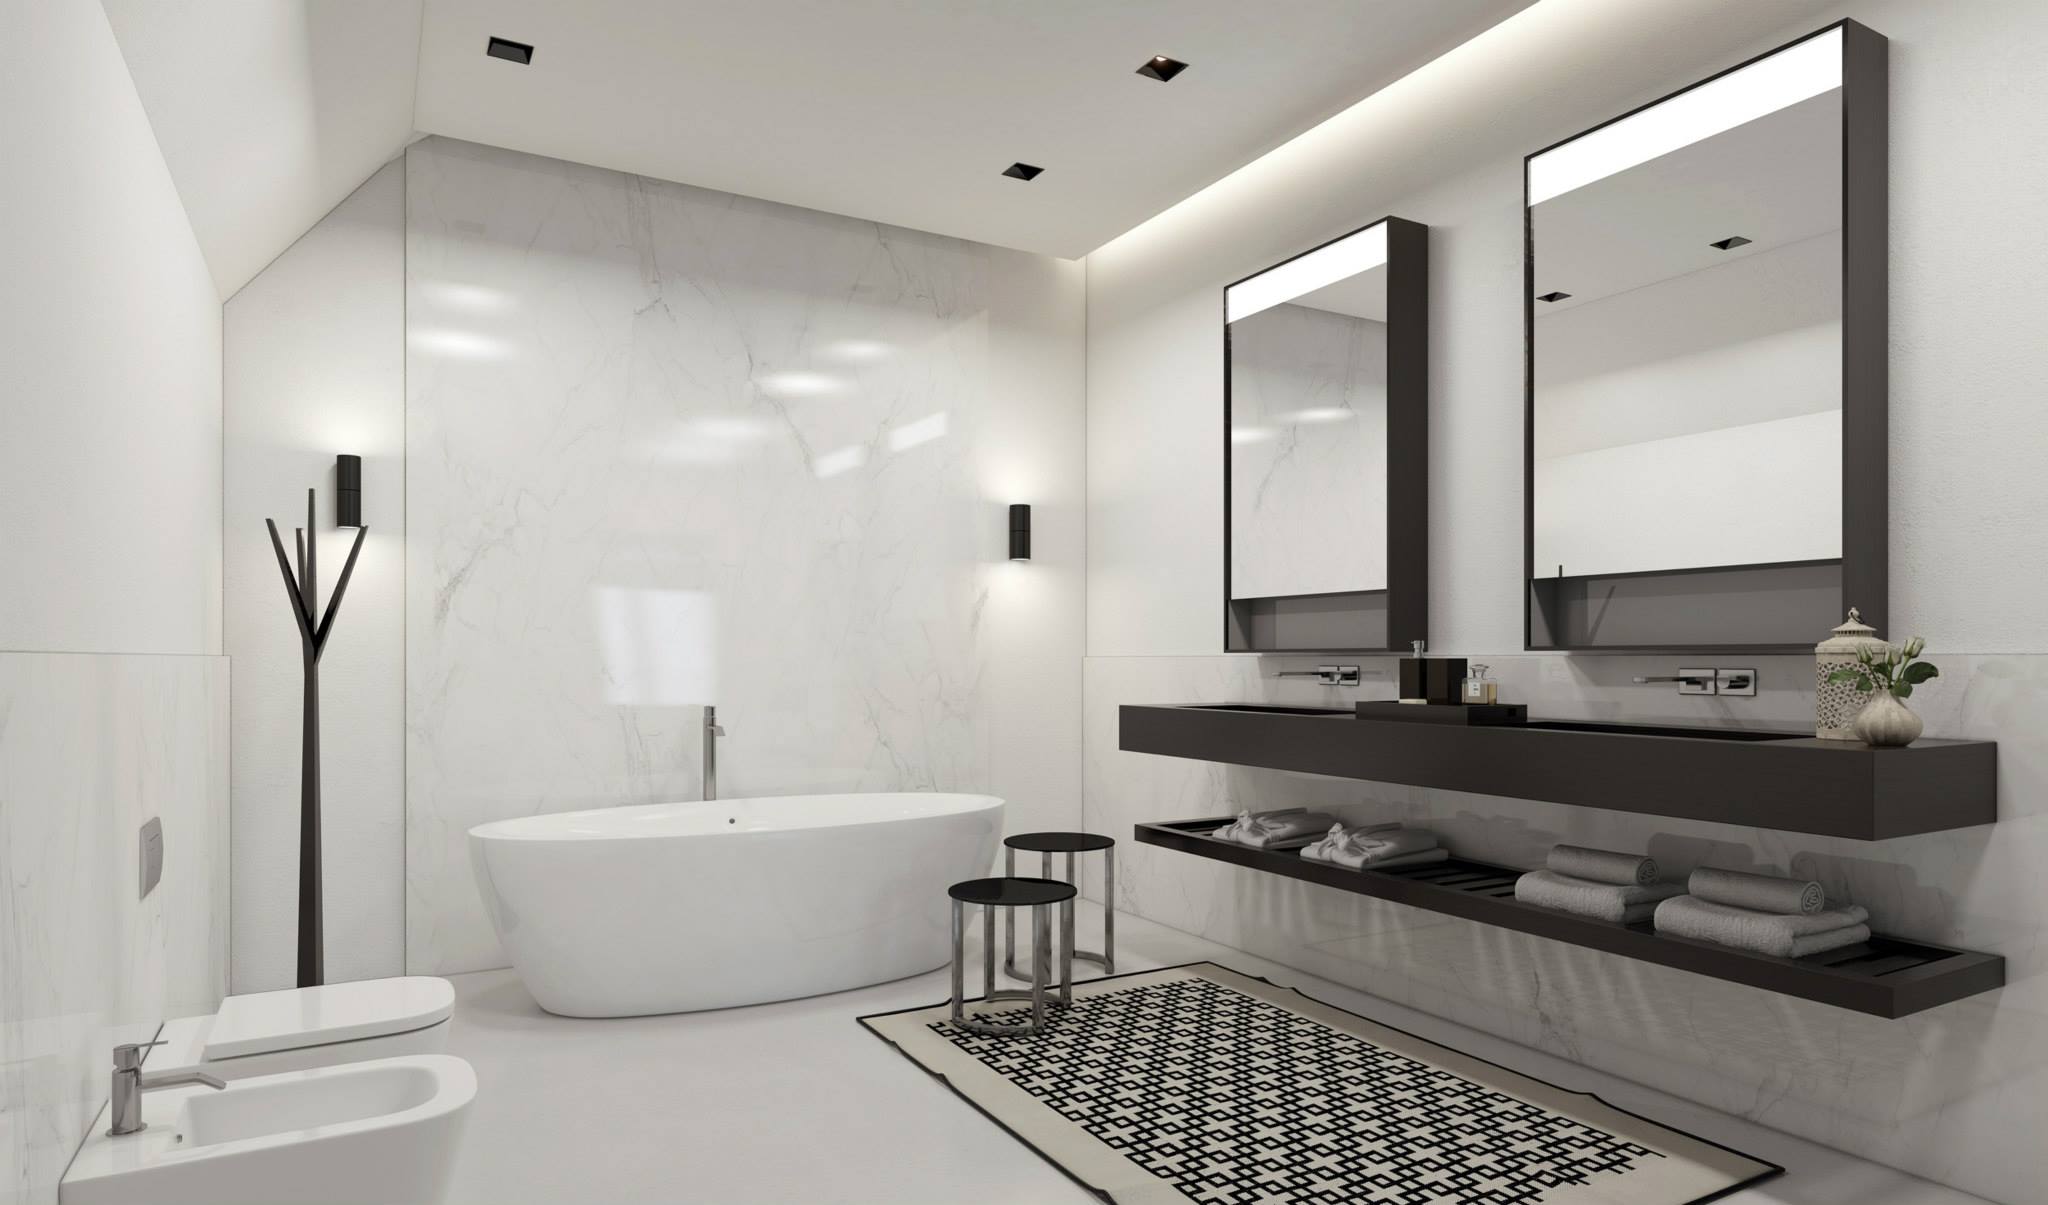 三居 现代 简约 卫生间图片来自百合居装饰工程有限公司在后现代设计的分享